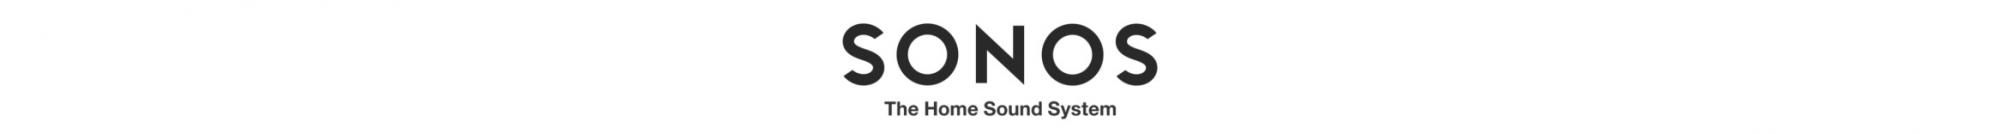 Sonos Move prijenosni wifi airplay zvučnik 2 apple emitira glazbu bez mikrofona, bluetooth, višenamjenski zvuk u svakoj sobi, otporan na vlagu, stereo zvuk s povezana dva zvučnika u kupaonici, dva digitalna pojačala razreda D, visokotonski i niskotonski podesivi bas i visoko automatsko ažuriranje programske opreme, 10-satno trajanje baterije za punjenje